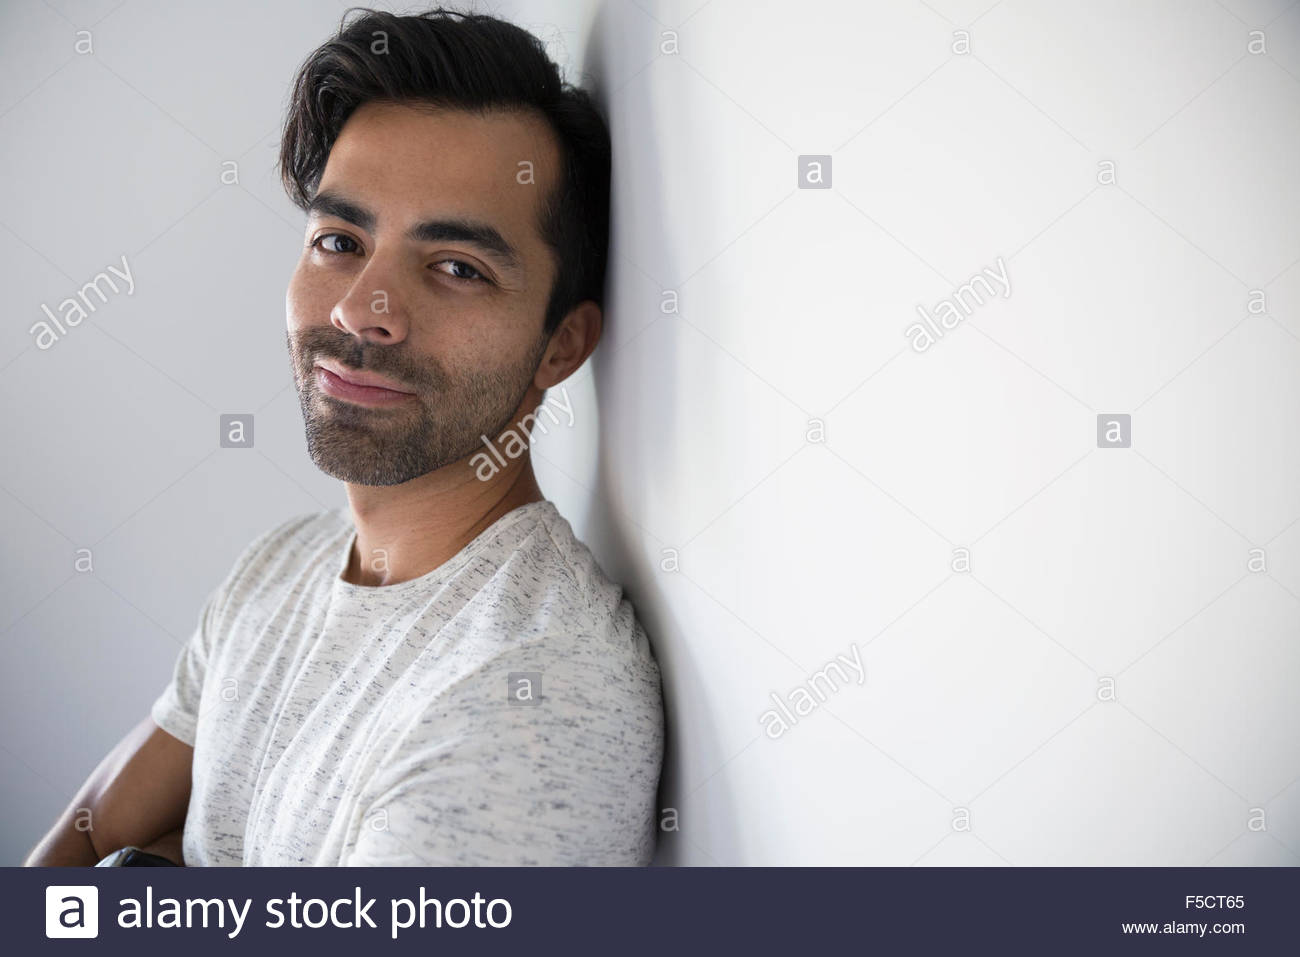 Hombre sonriente retrato con pelo negro y rastrojo Foto de stock